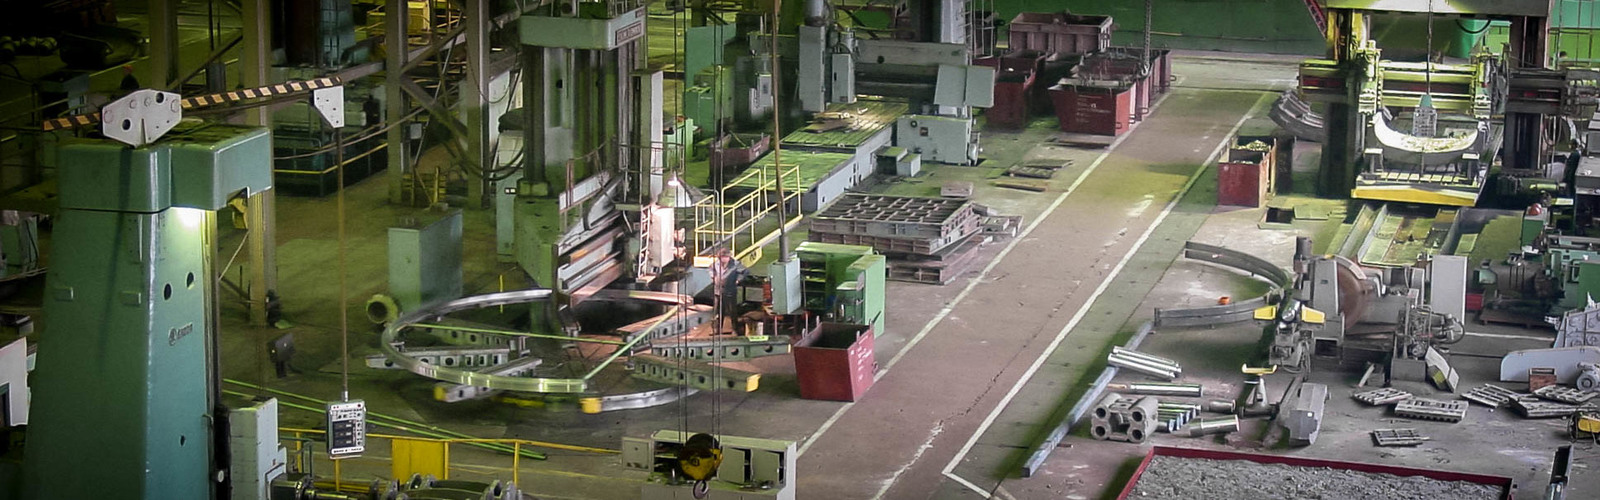 Реферат: Оскольский завод металлургического машиностроения